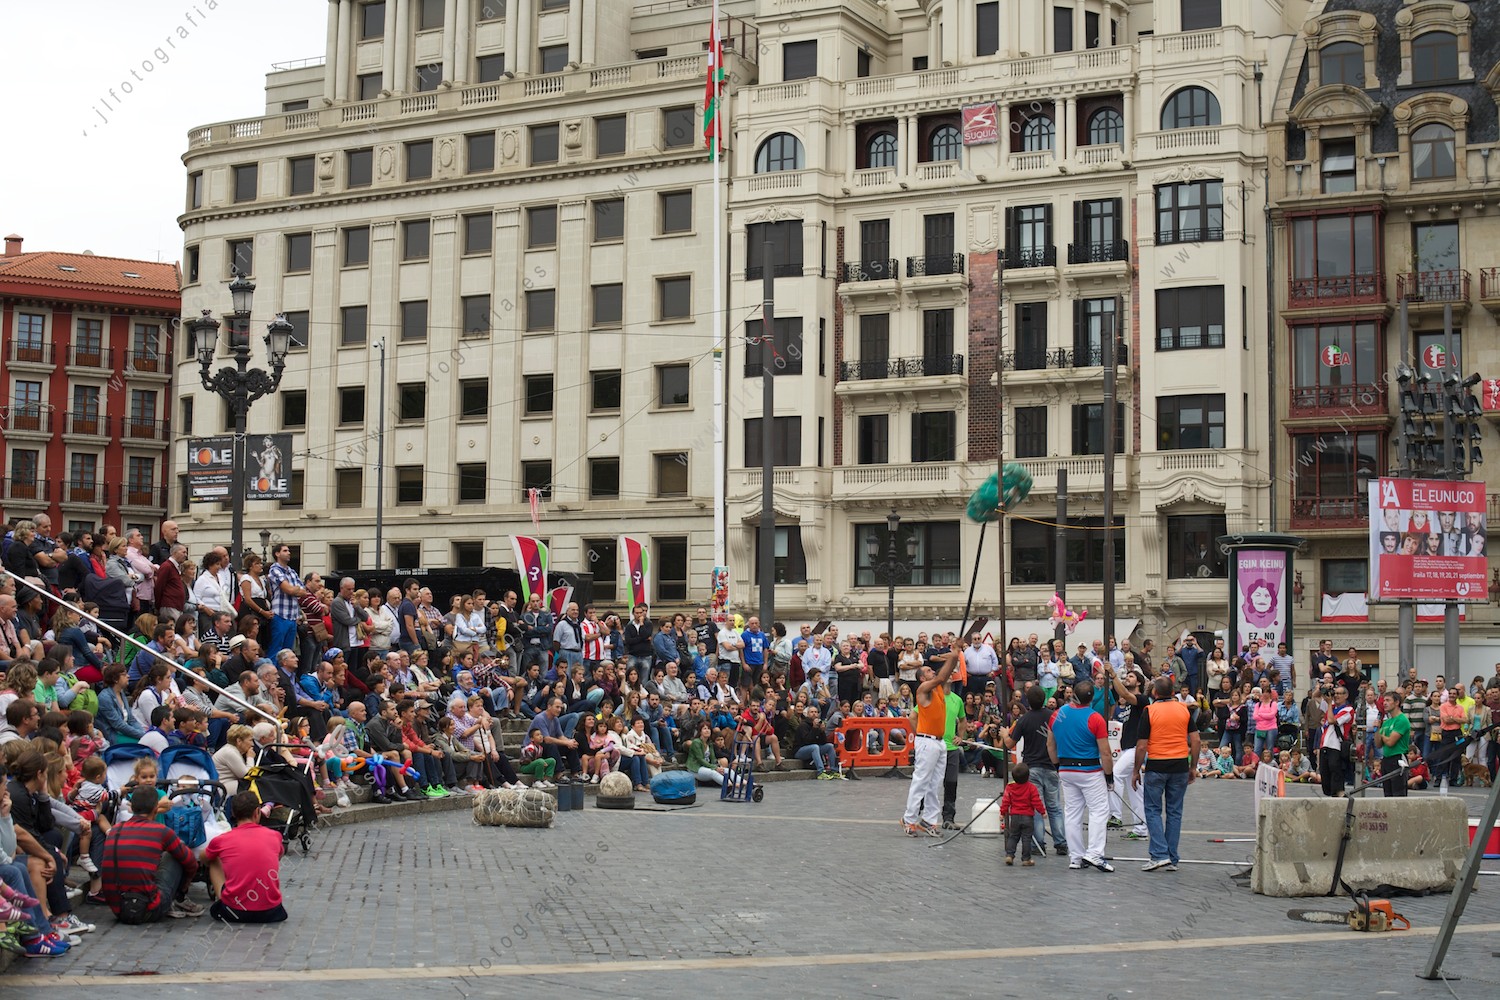 Aste Nagusia de Bilbao, competición de deporte rural en la plaza del Arriaga, lanzamiento de fardo de paja